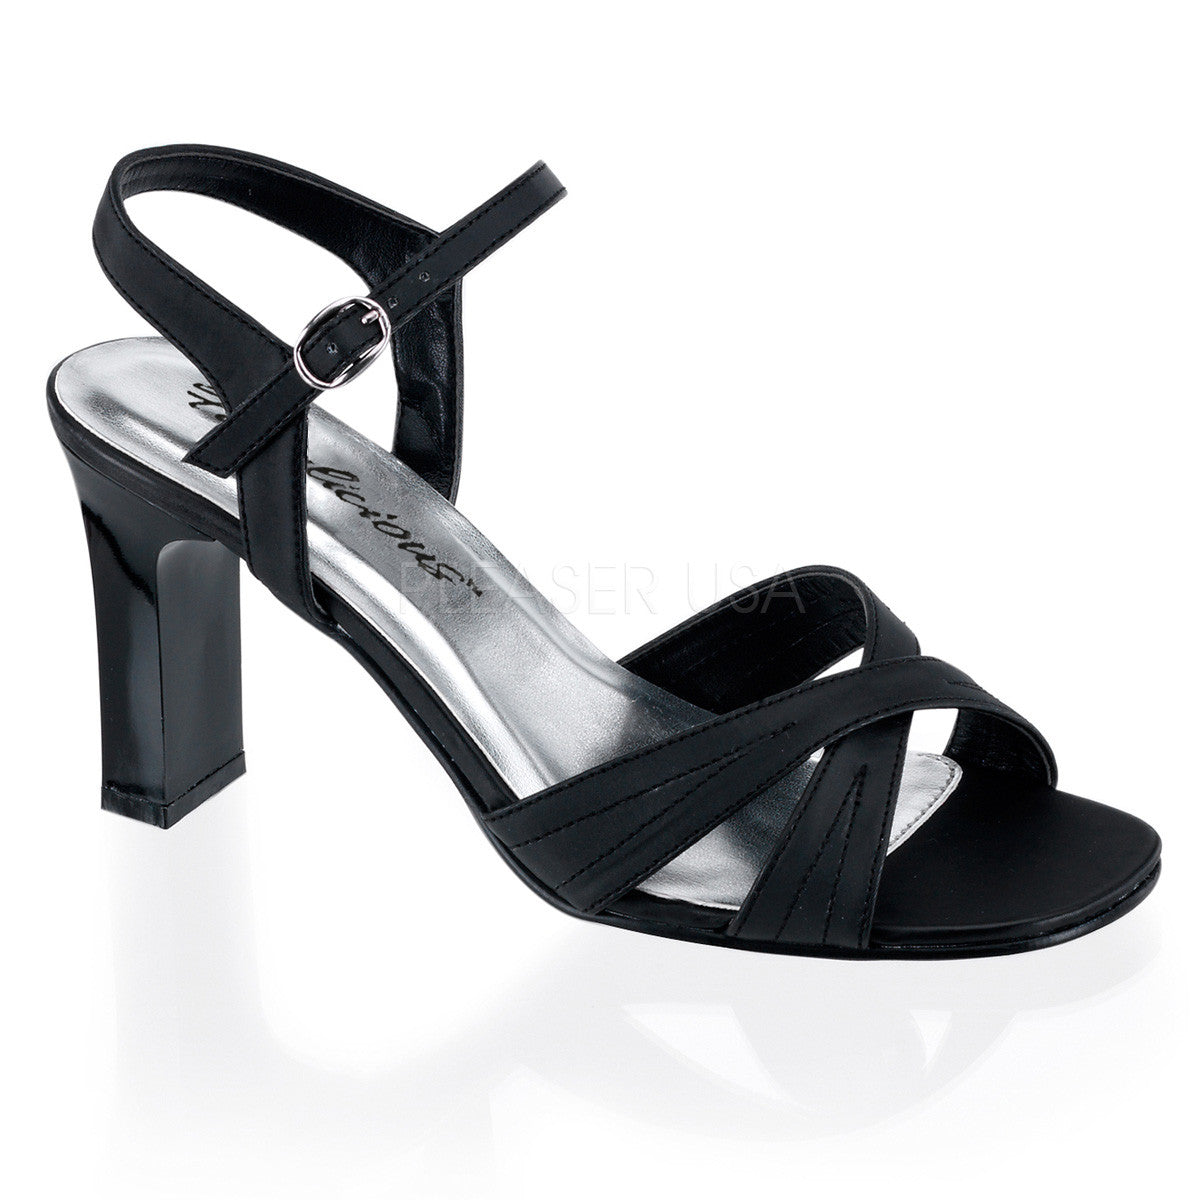 FABULICIOUS ROMANCE-313 Black Satin Pu Ankle Strap Sandals - Shoecup.com